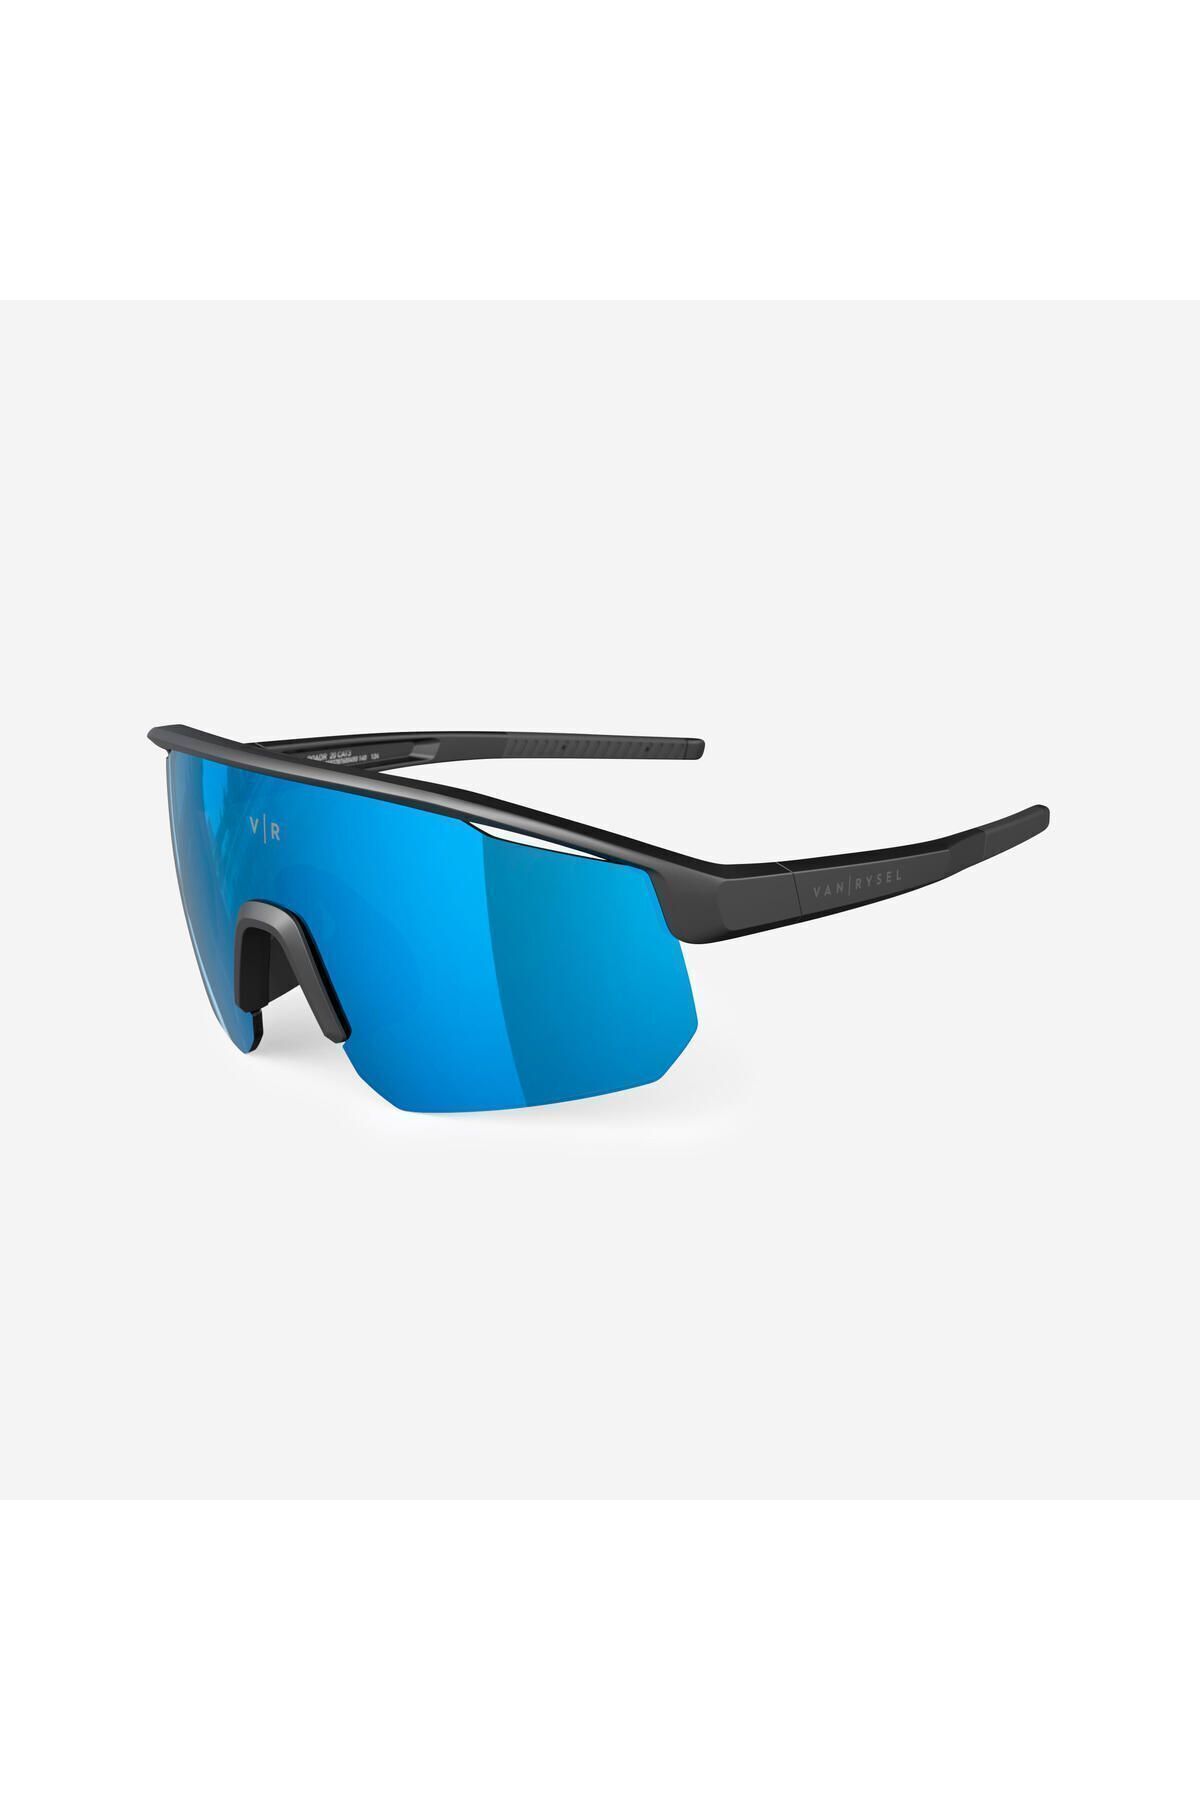 Decathlon Bisiklet Gözlüğü - Yetişkin 3. Kategori - Siyah/mavi - Roadr 900